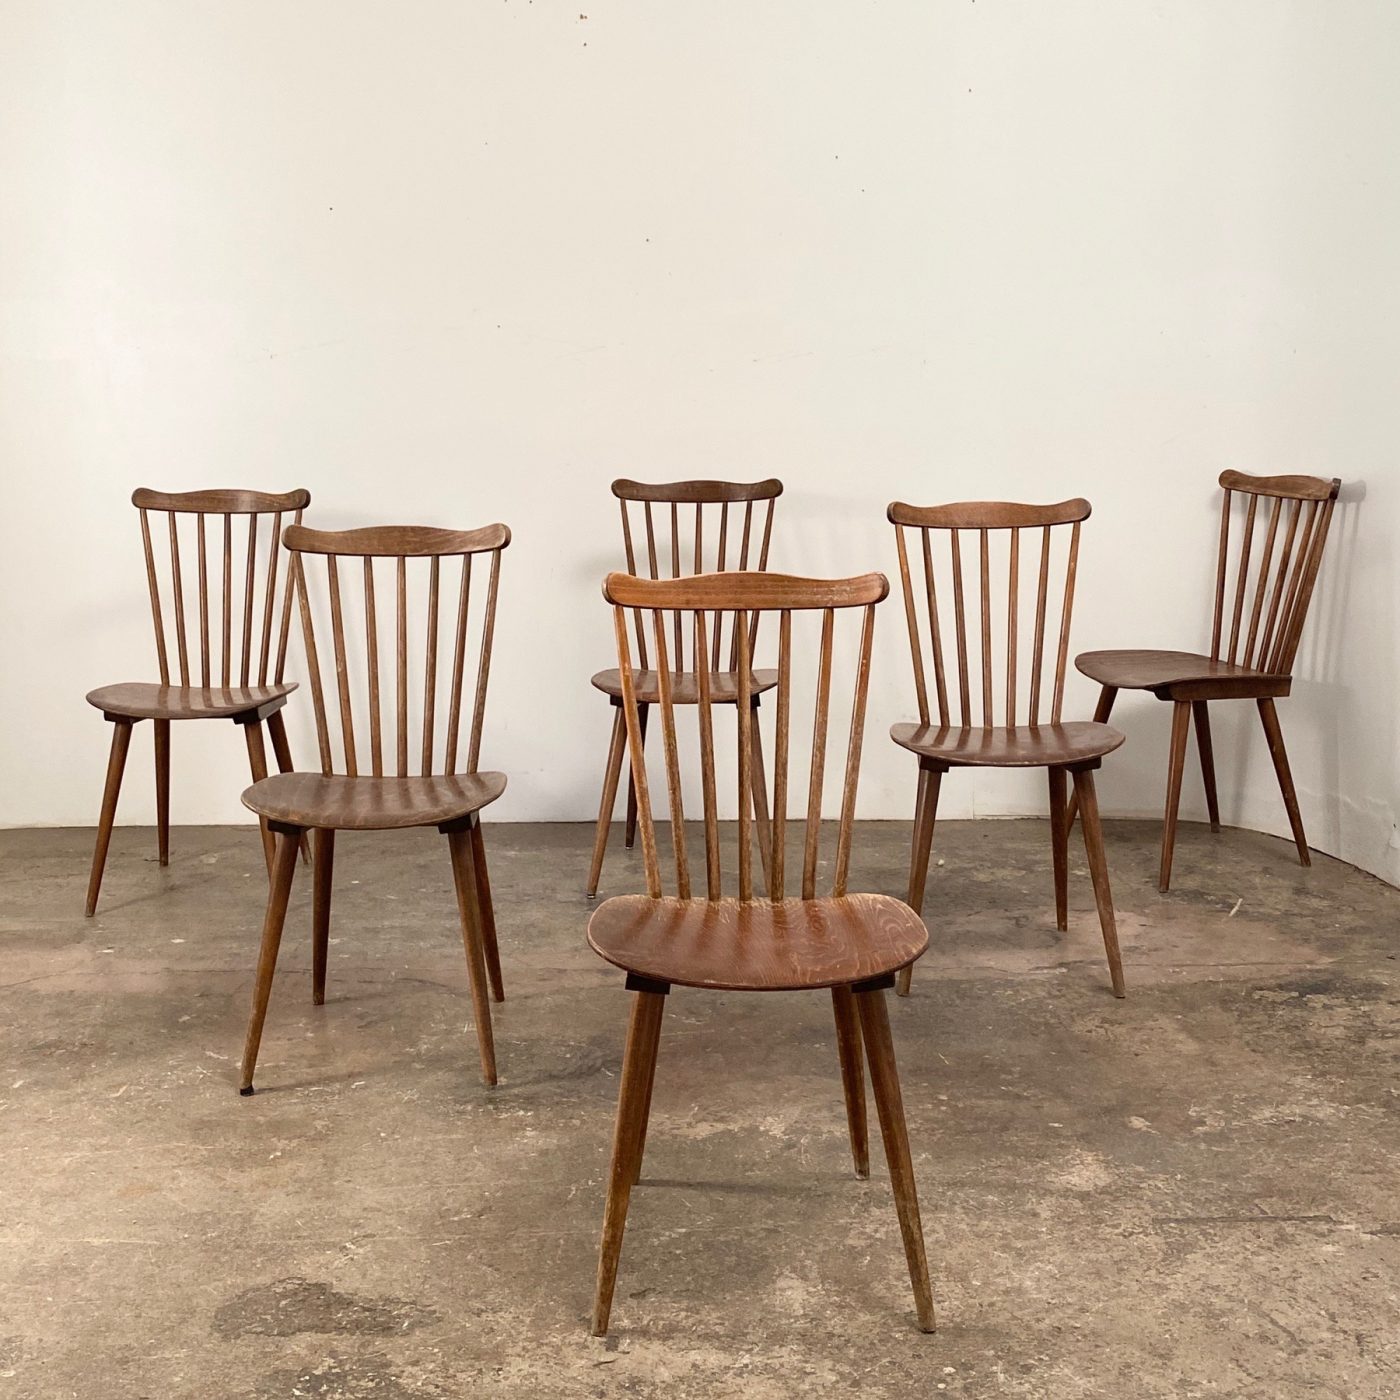 objet-vagabond-bistrot-chairs0002